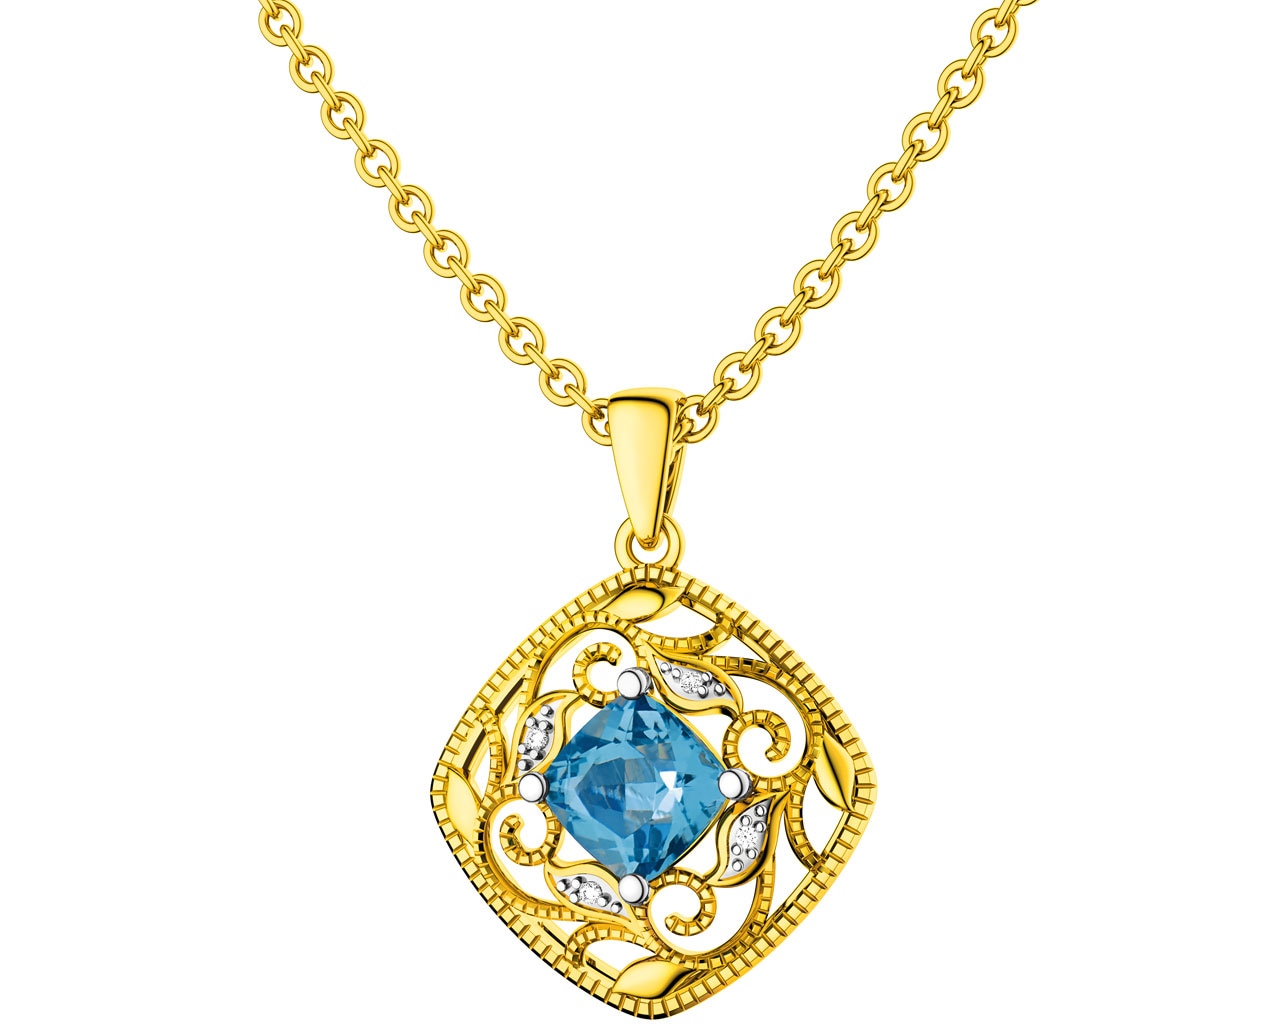 Zlatý přívěsek s diamanty a topazem (London Blue)  0,01 ct - ryzost 585